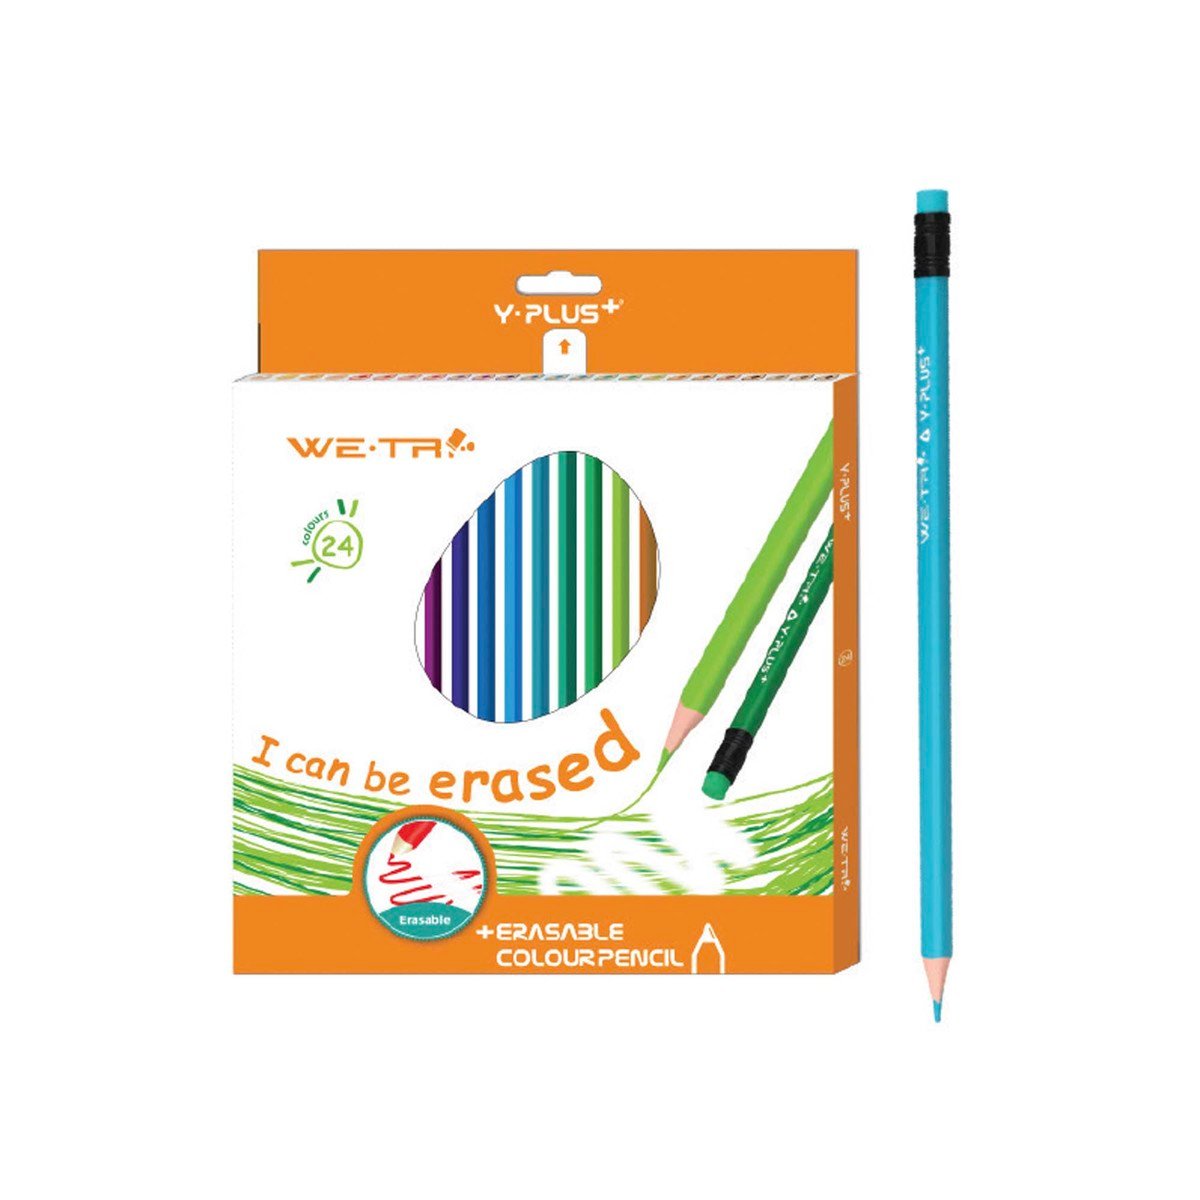 Y-Plus Erasable Color Pencil 24's